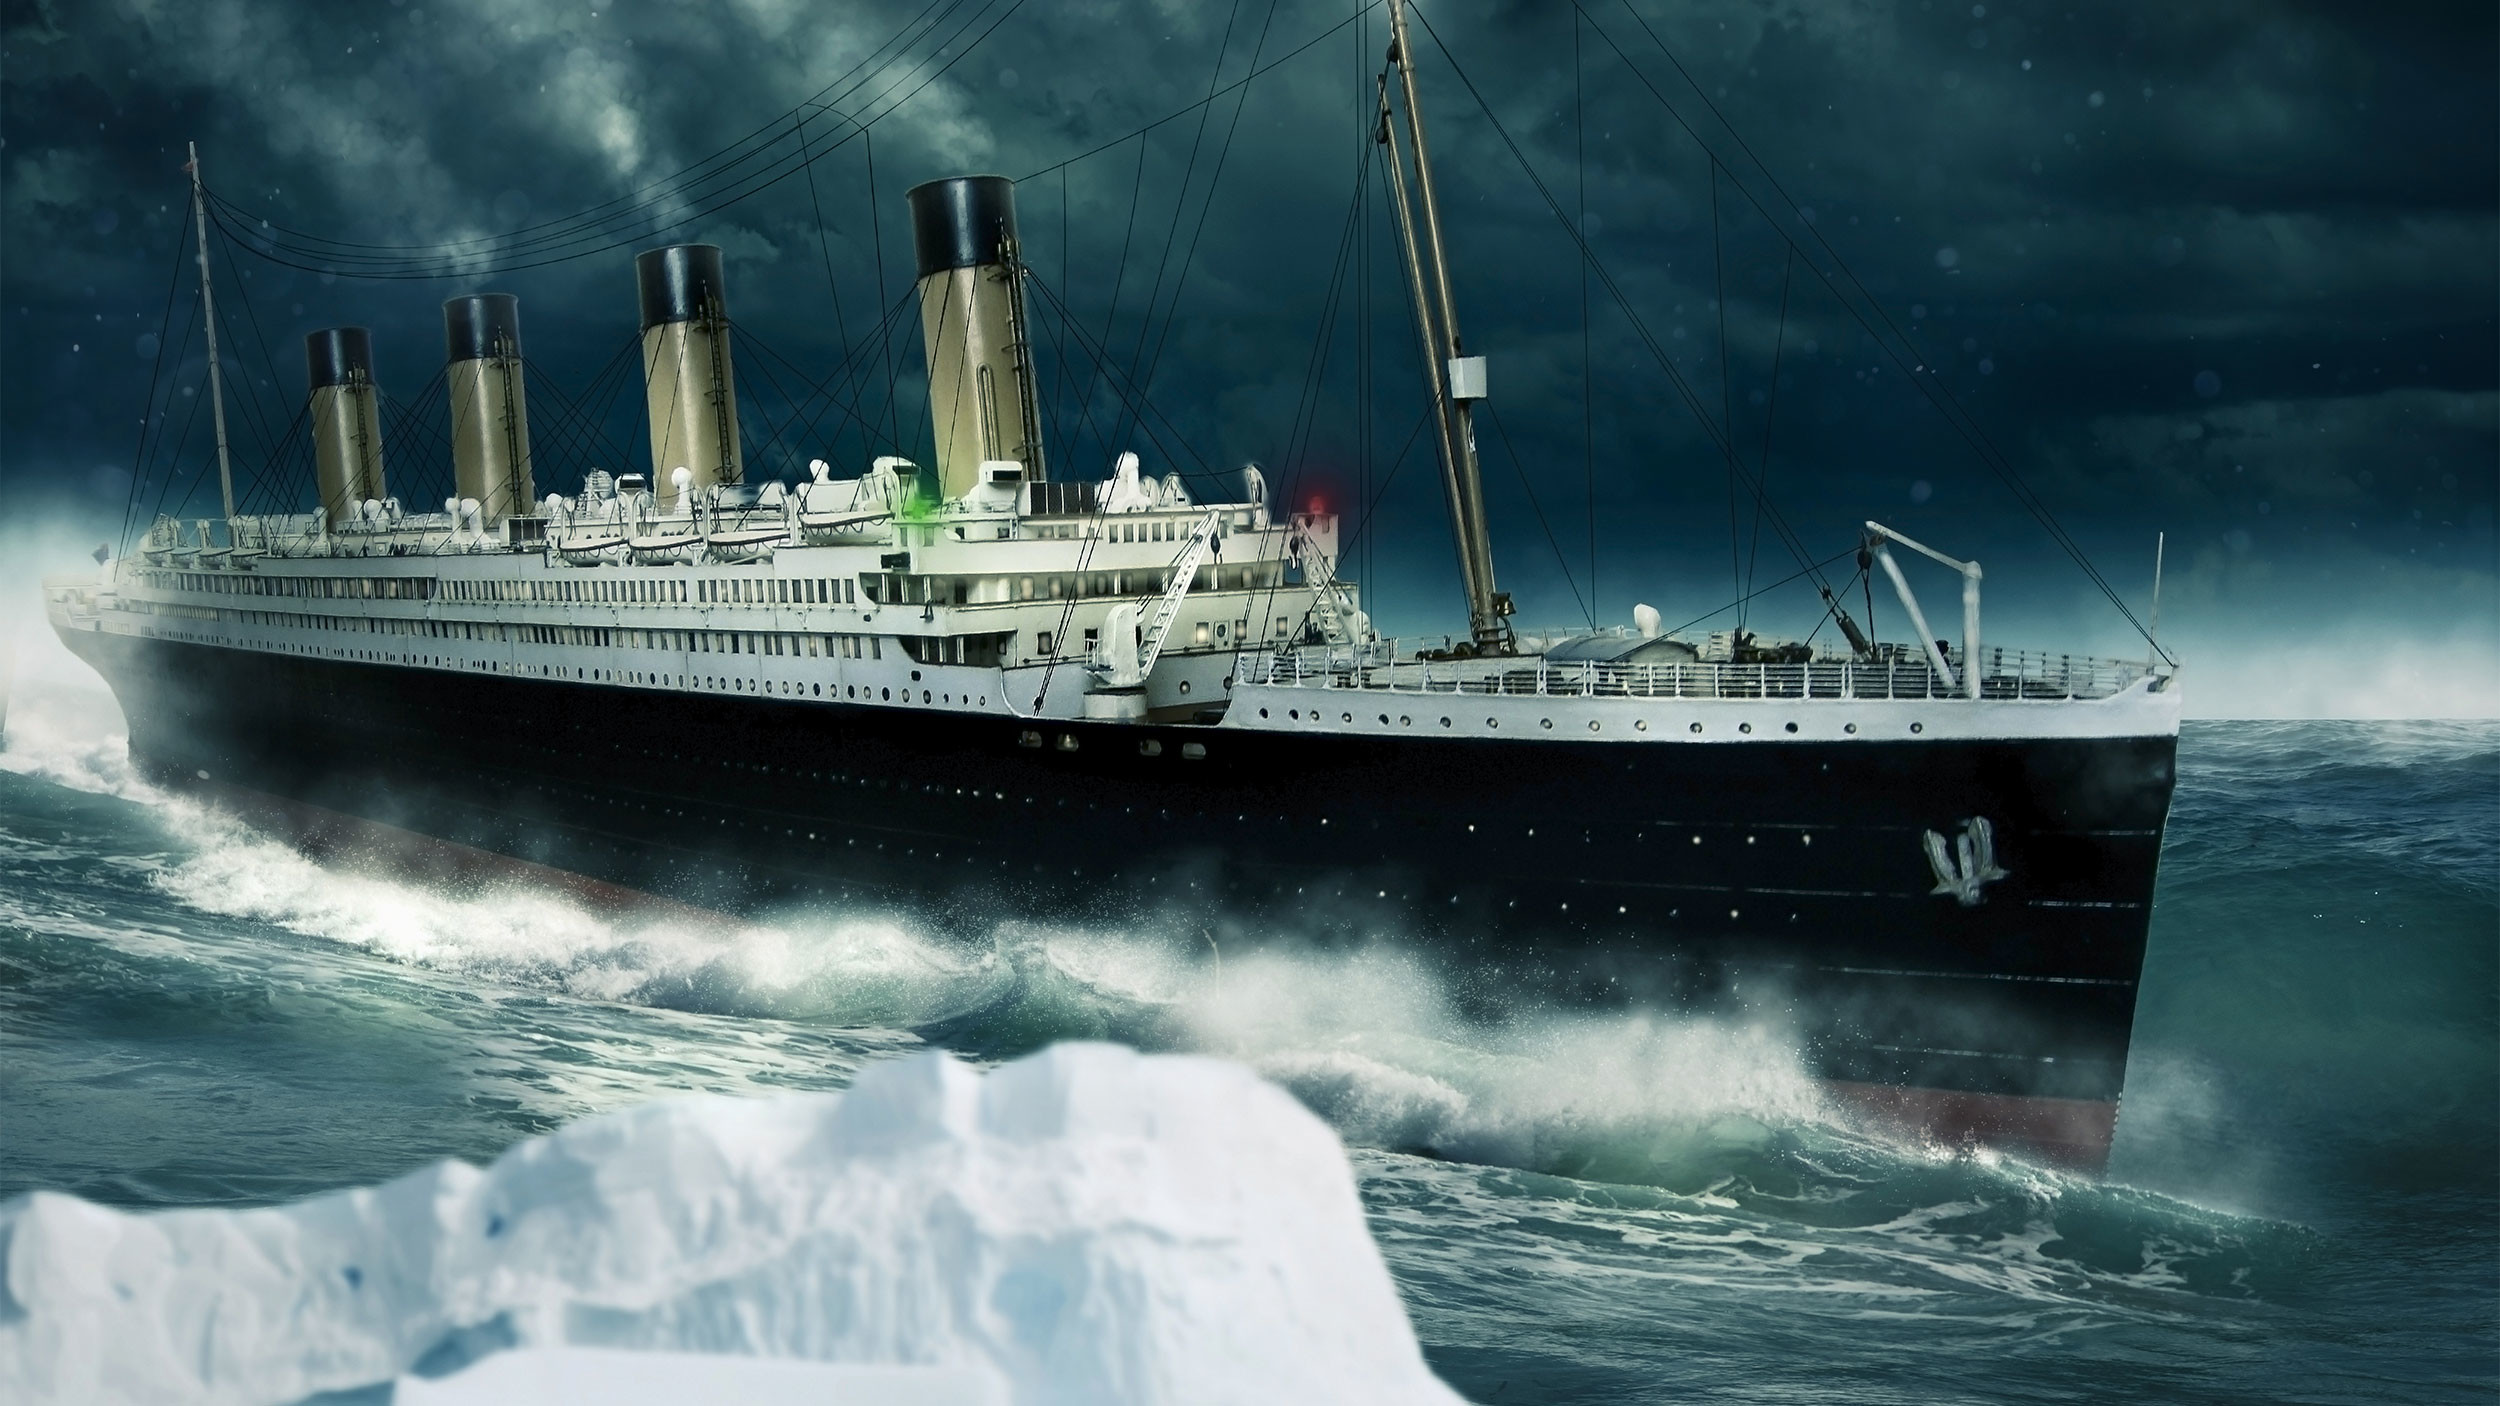 Тонул не «Титаник». Версия с подменой легендарного корабля набирает популярность